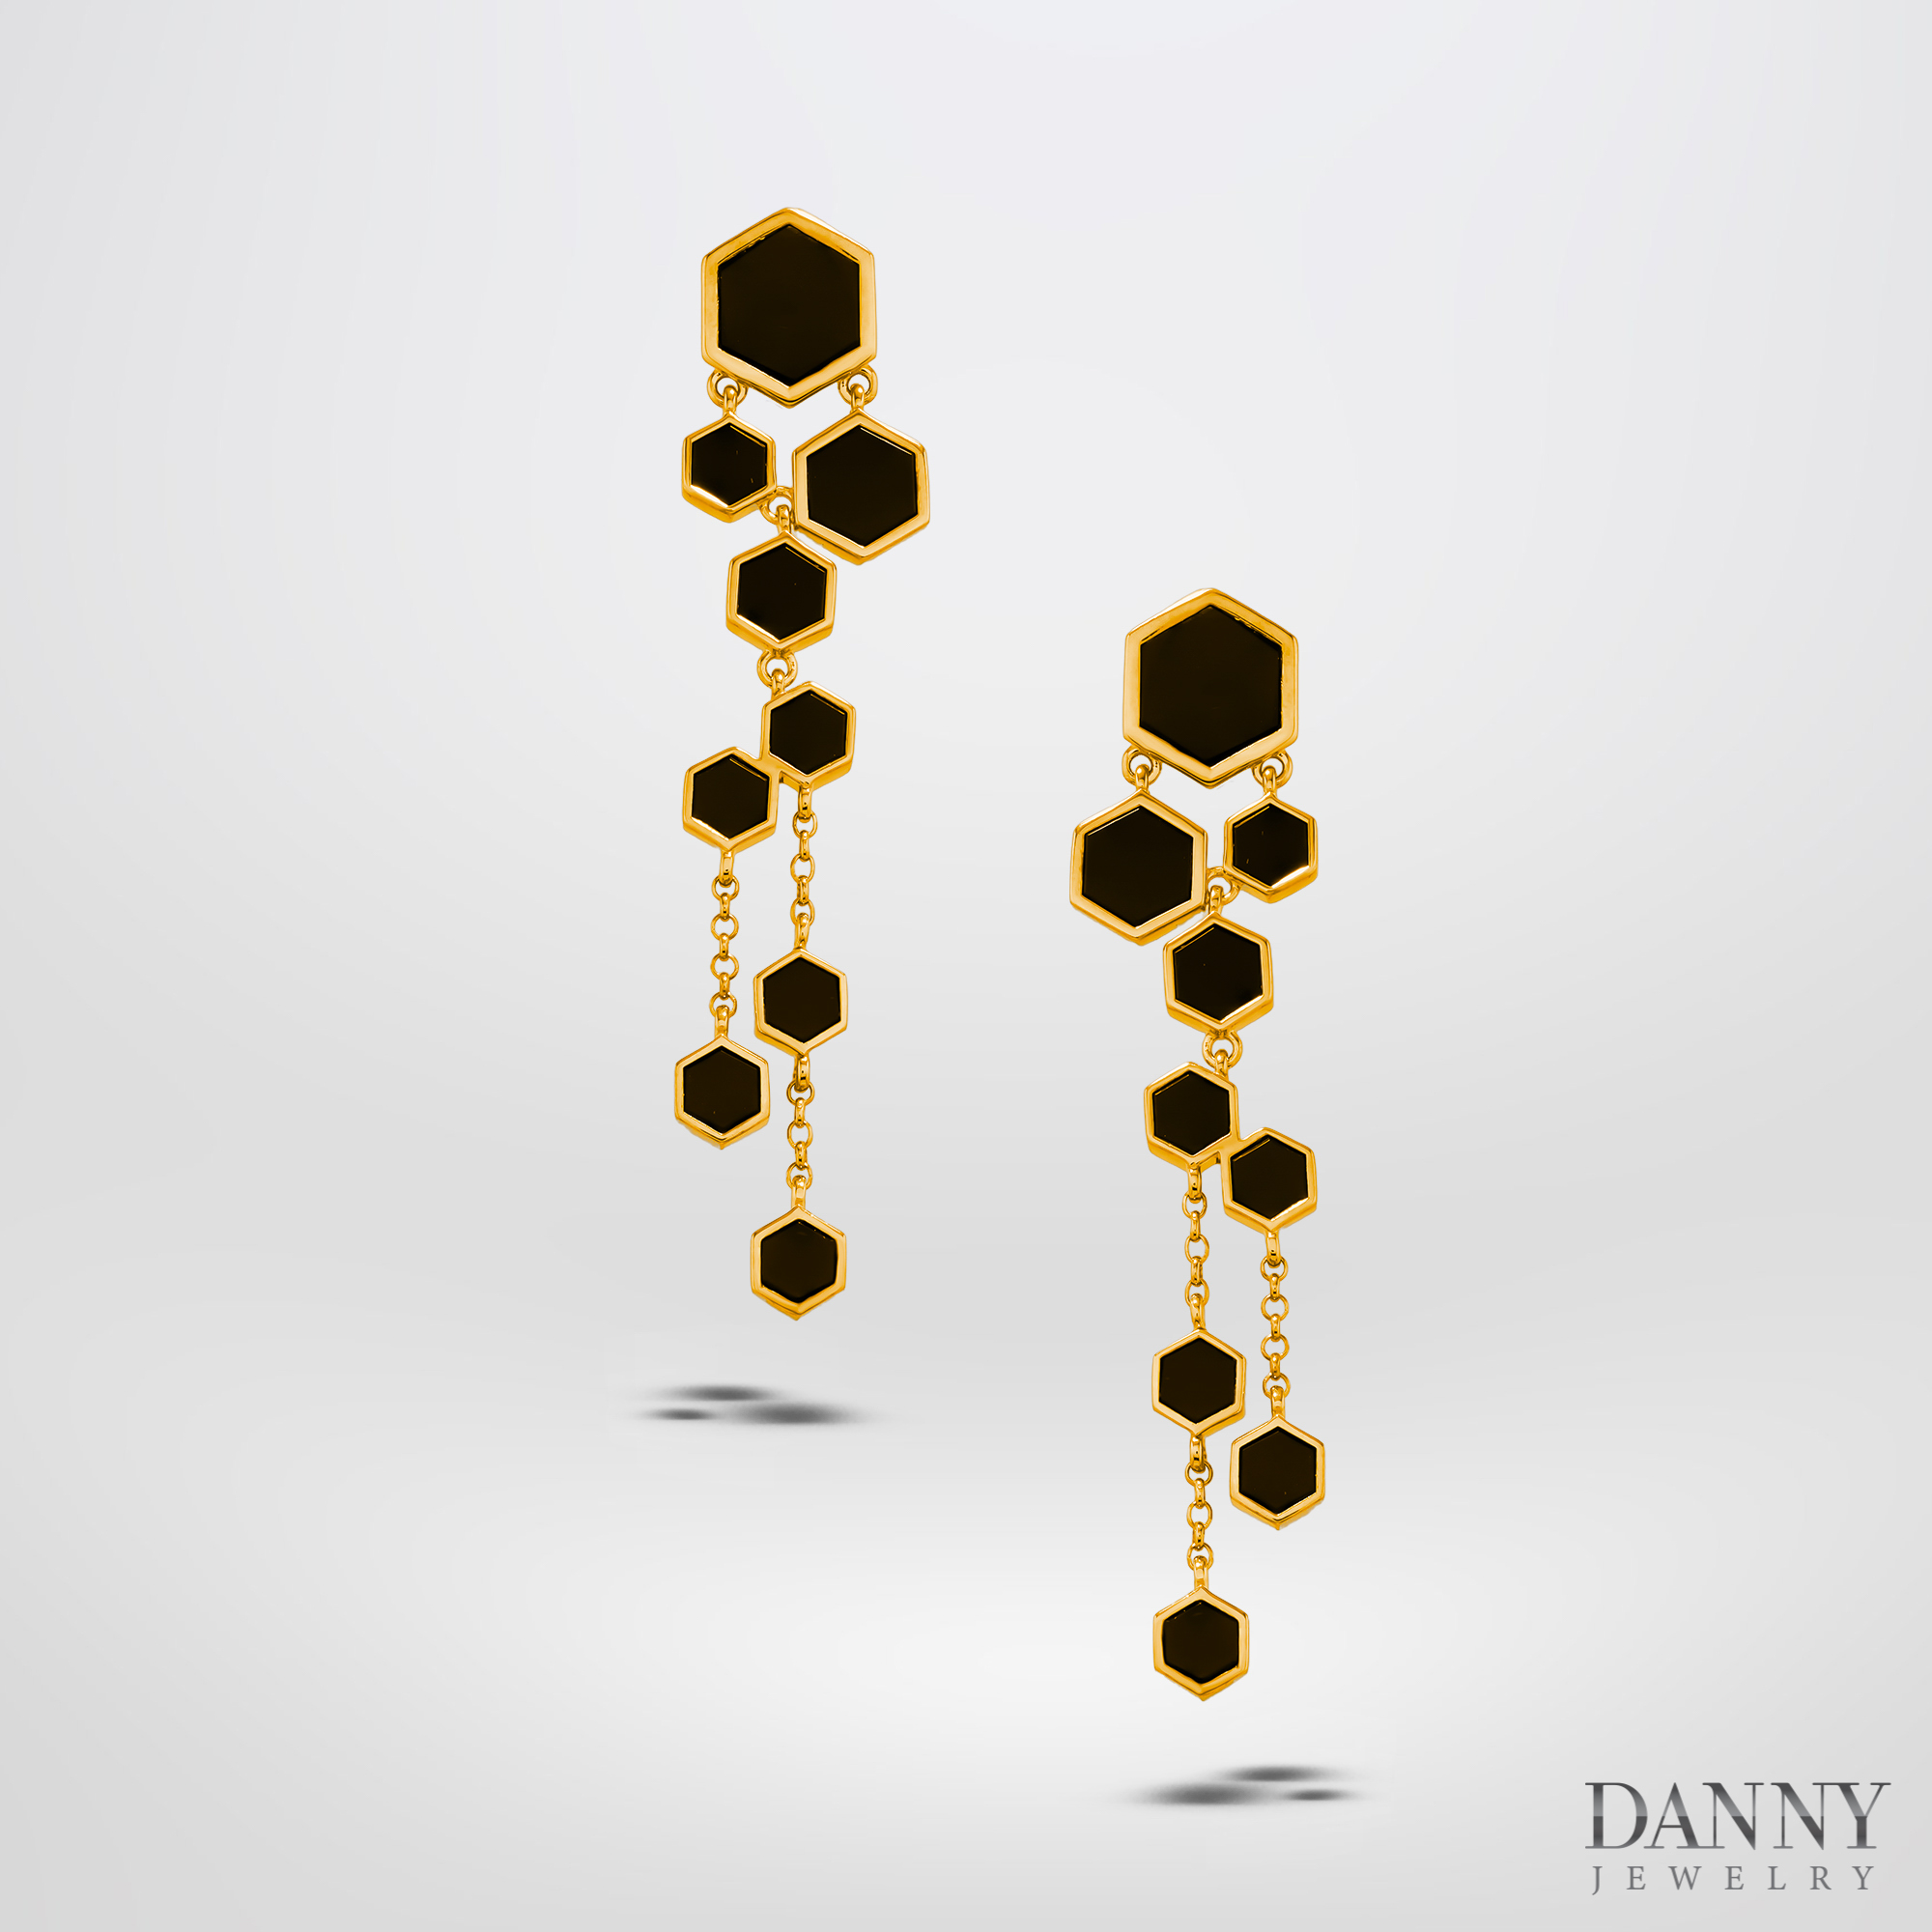 Bông Tai Nữ Danny Jewelry Bạc 925 Hình Lục Giác Đính Đá Onyx Xi Vàng  - BT0040